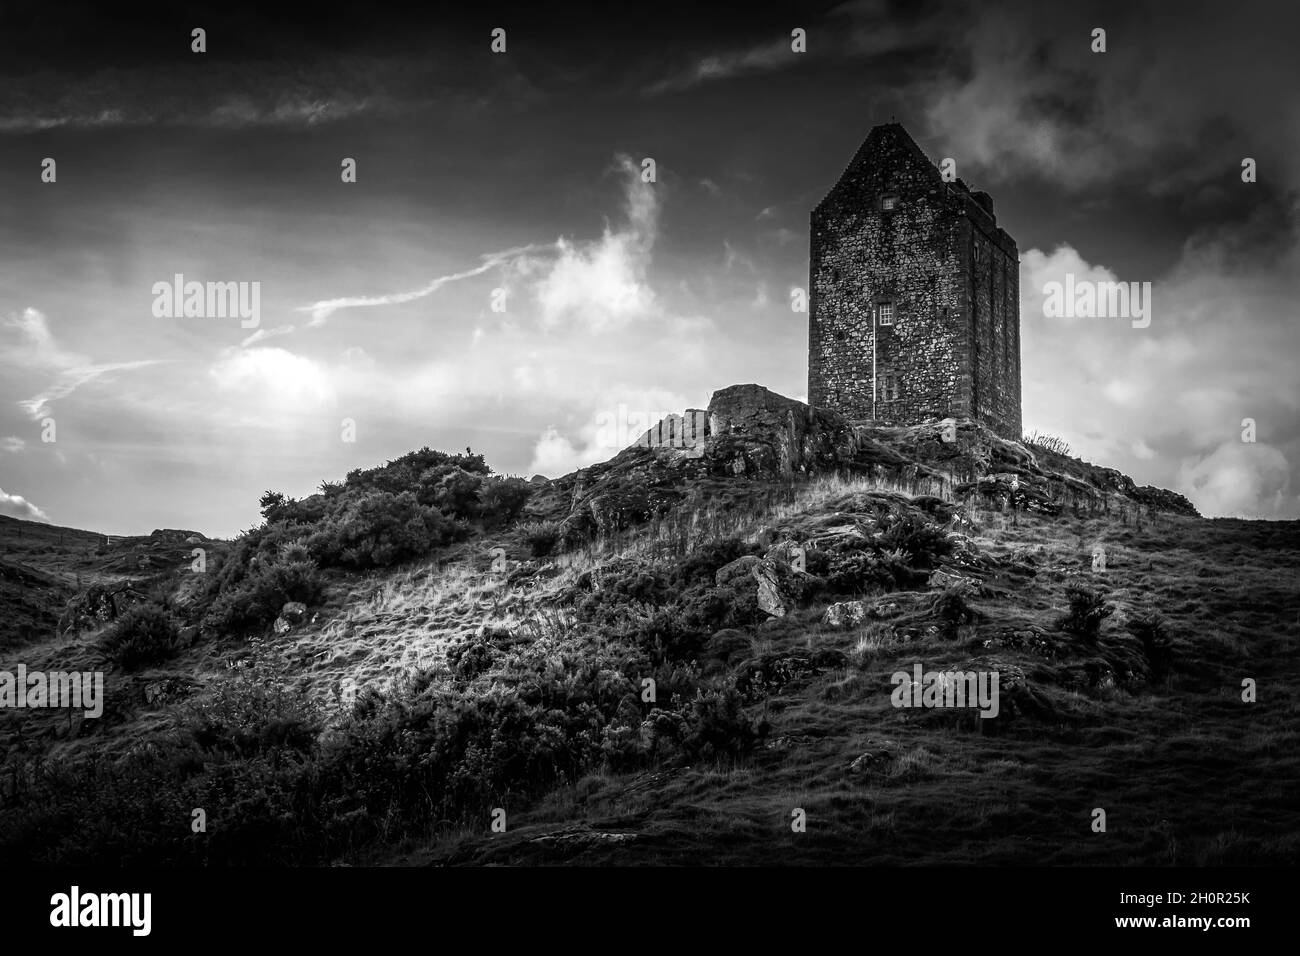 Image en noir et blanc de la tour de Smailholm Kelso Écosse avec un ciel spectaculaire et une silhouette de la tour.Personne. Banque D'Images